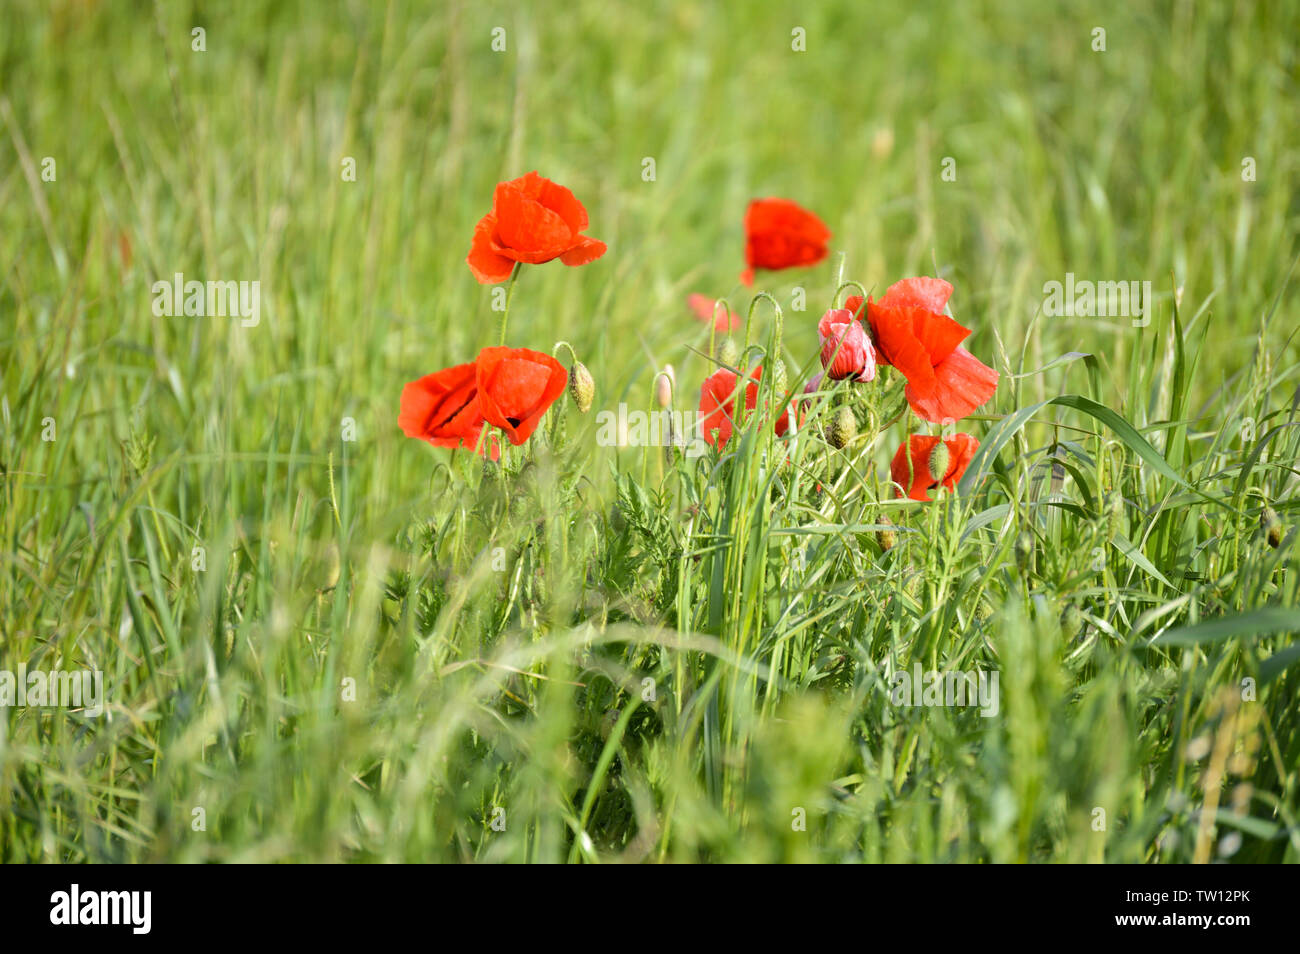 Poppy flowers in grass field Stock Photo